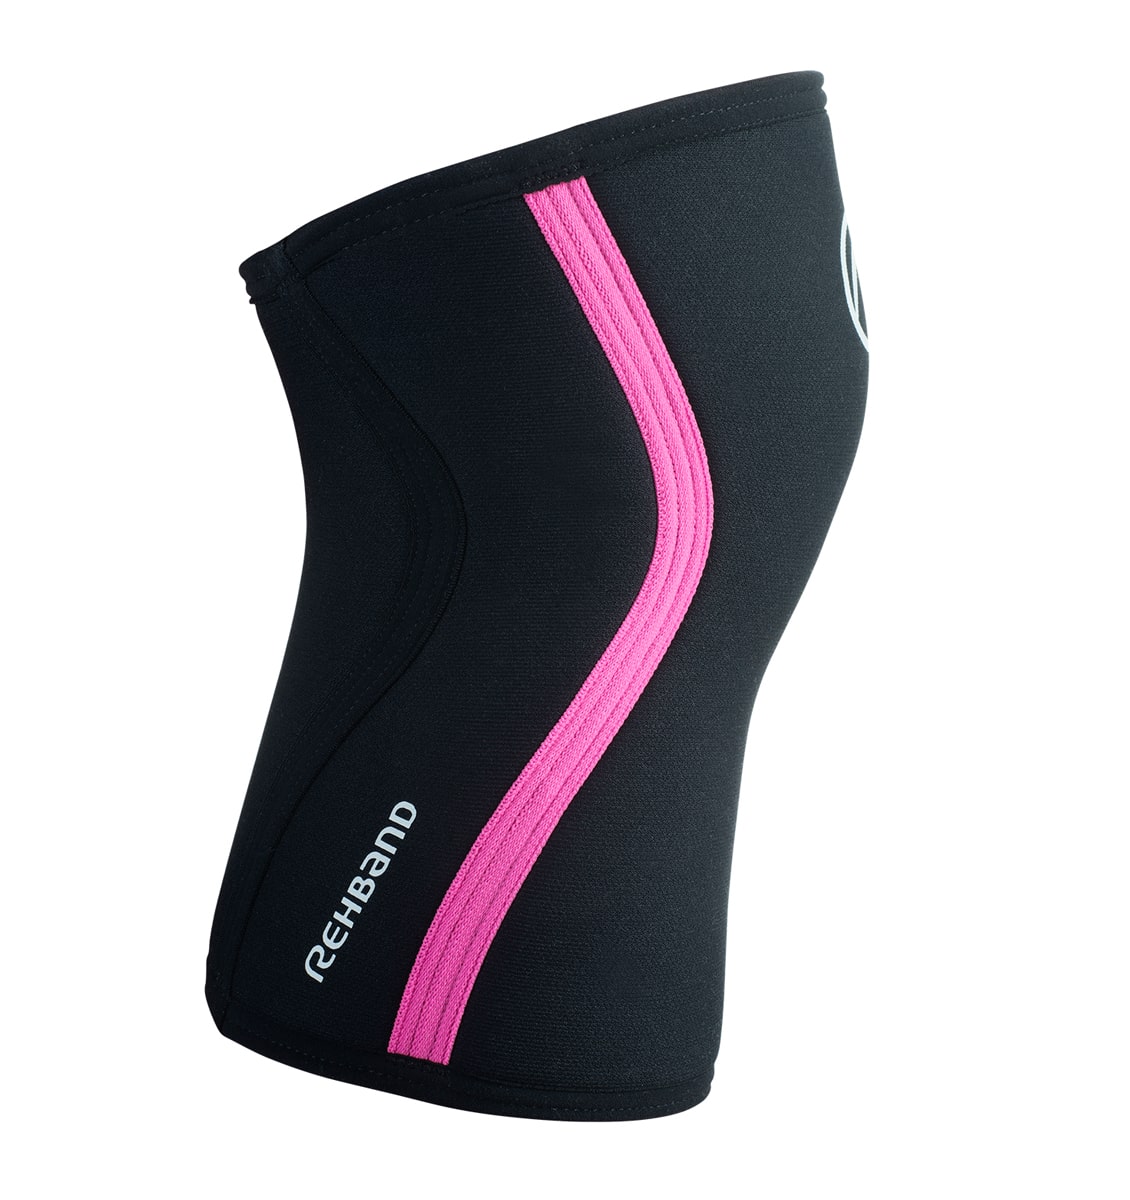 105434 - Rehband Rx Knee Sleeve - Black/Pink - 7mm - Side